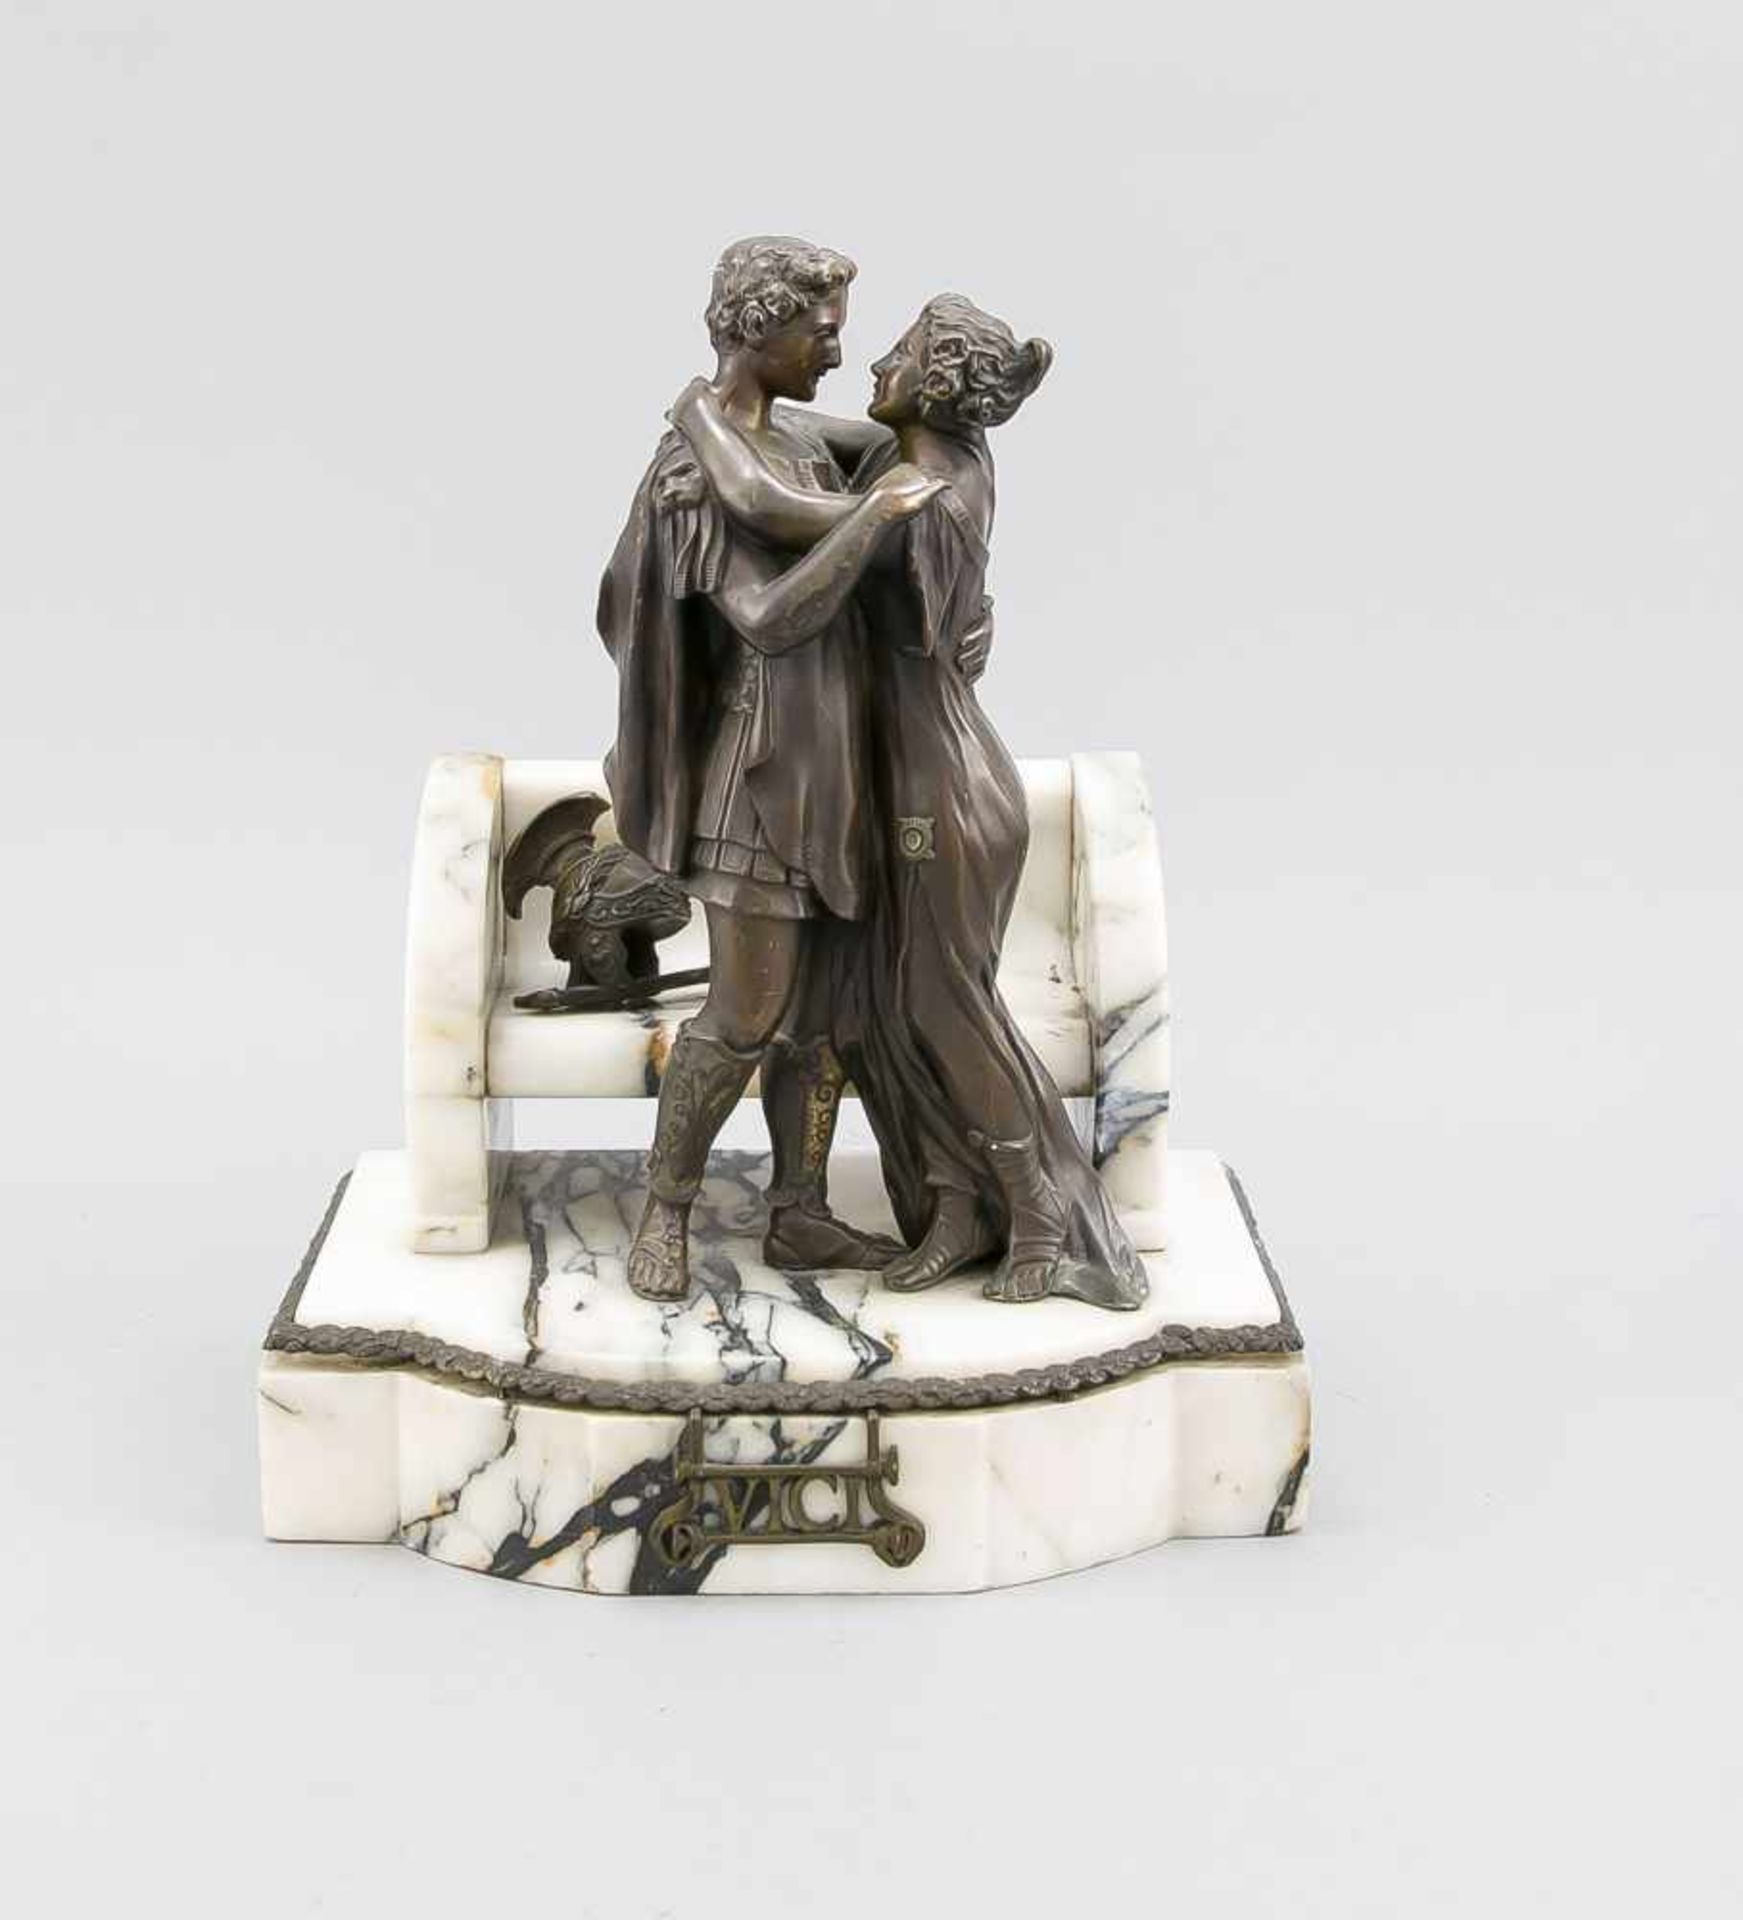 Anonymer Bildhauer um 1920, Bronzegruppe eines römisches Paares, das sich vor einer Bank,auf welcher